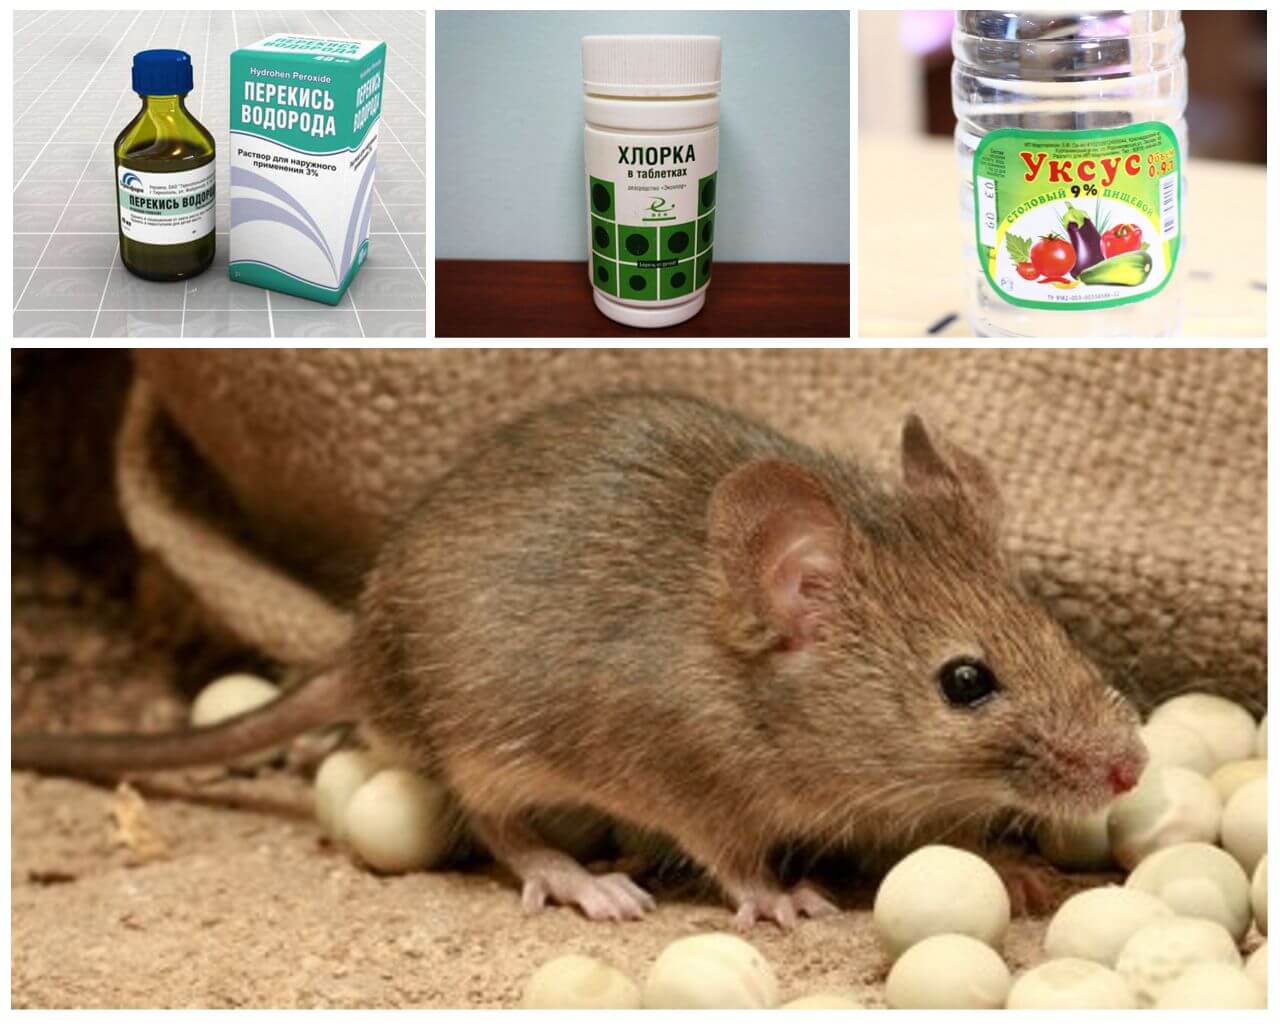 Как избавиться от крыс на участке: какой вред наносят, обзор лучших средств борьбы с ними - химические средства, физическое воздействие, отпугивание, живые крысоловки, санитарно-гигиенические меры